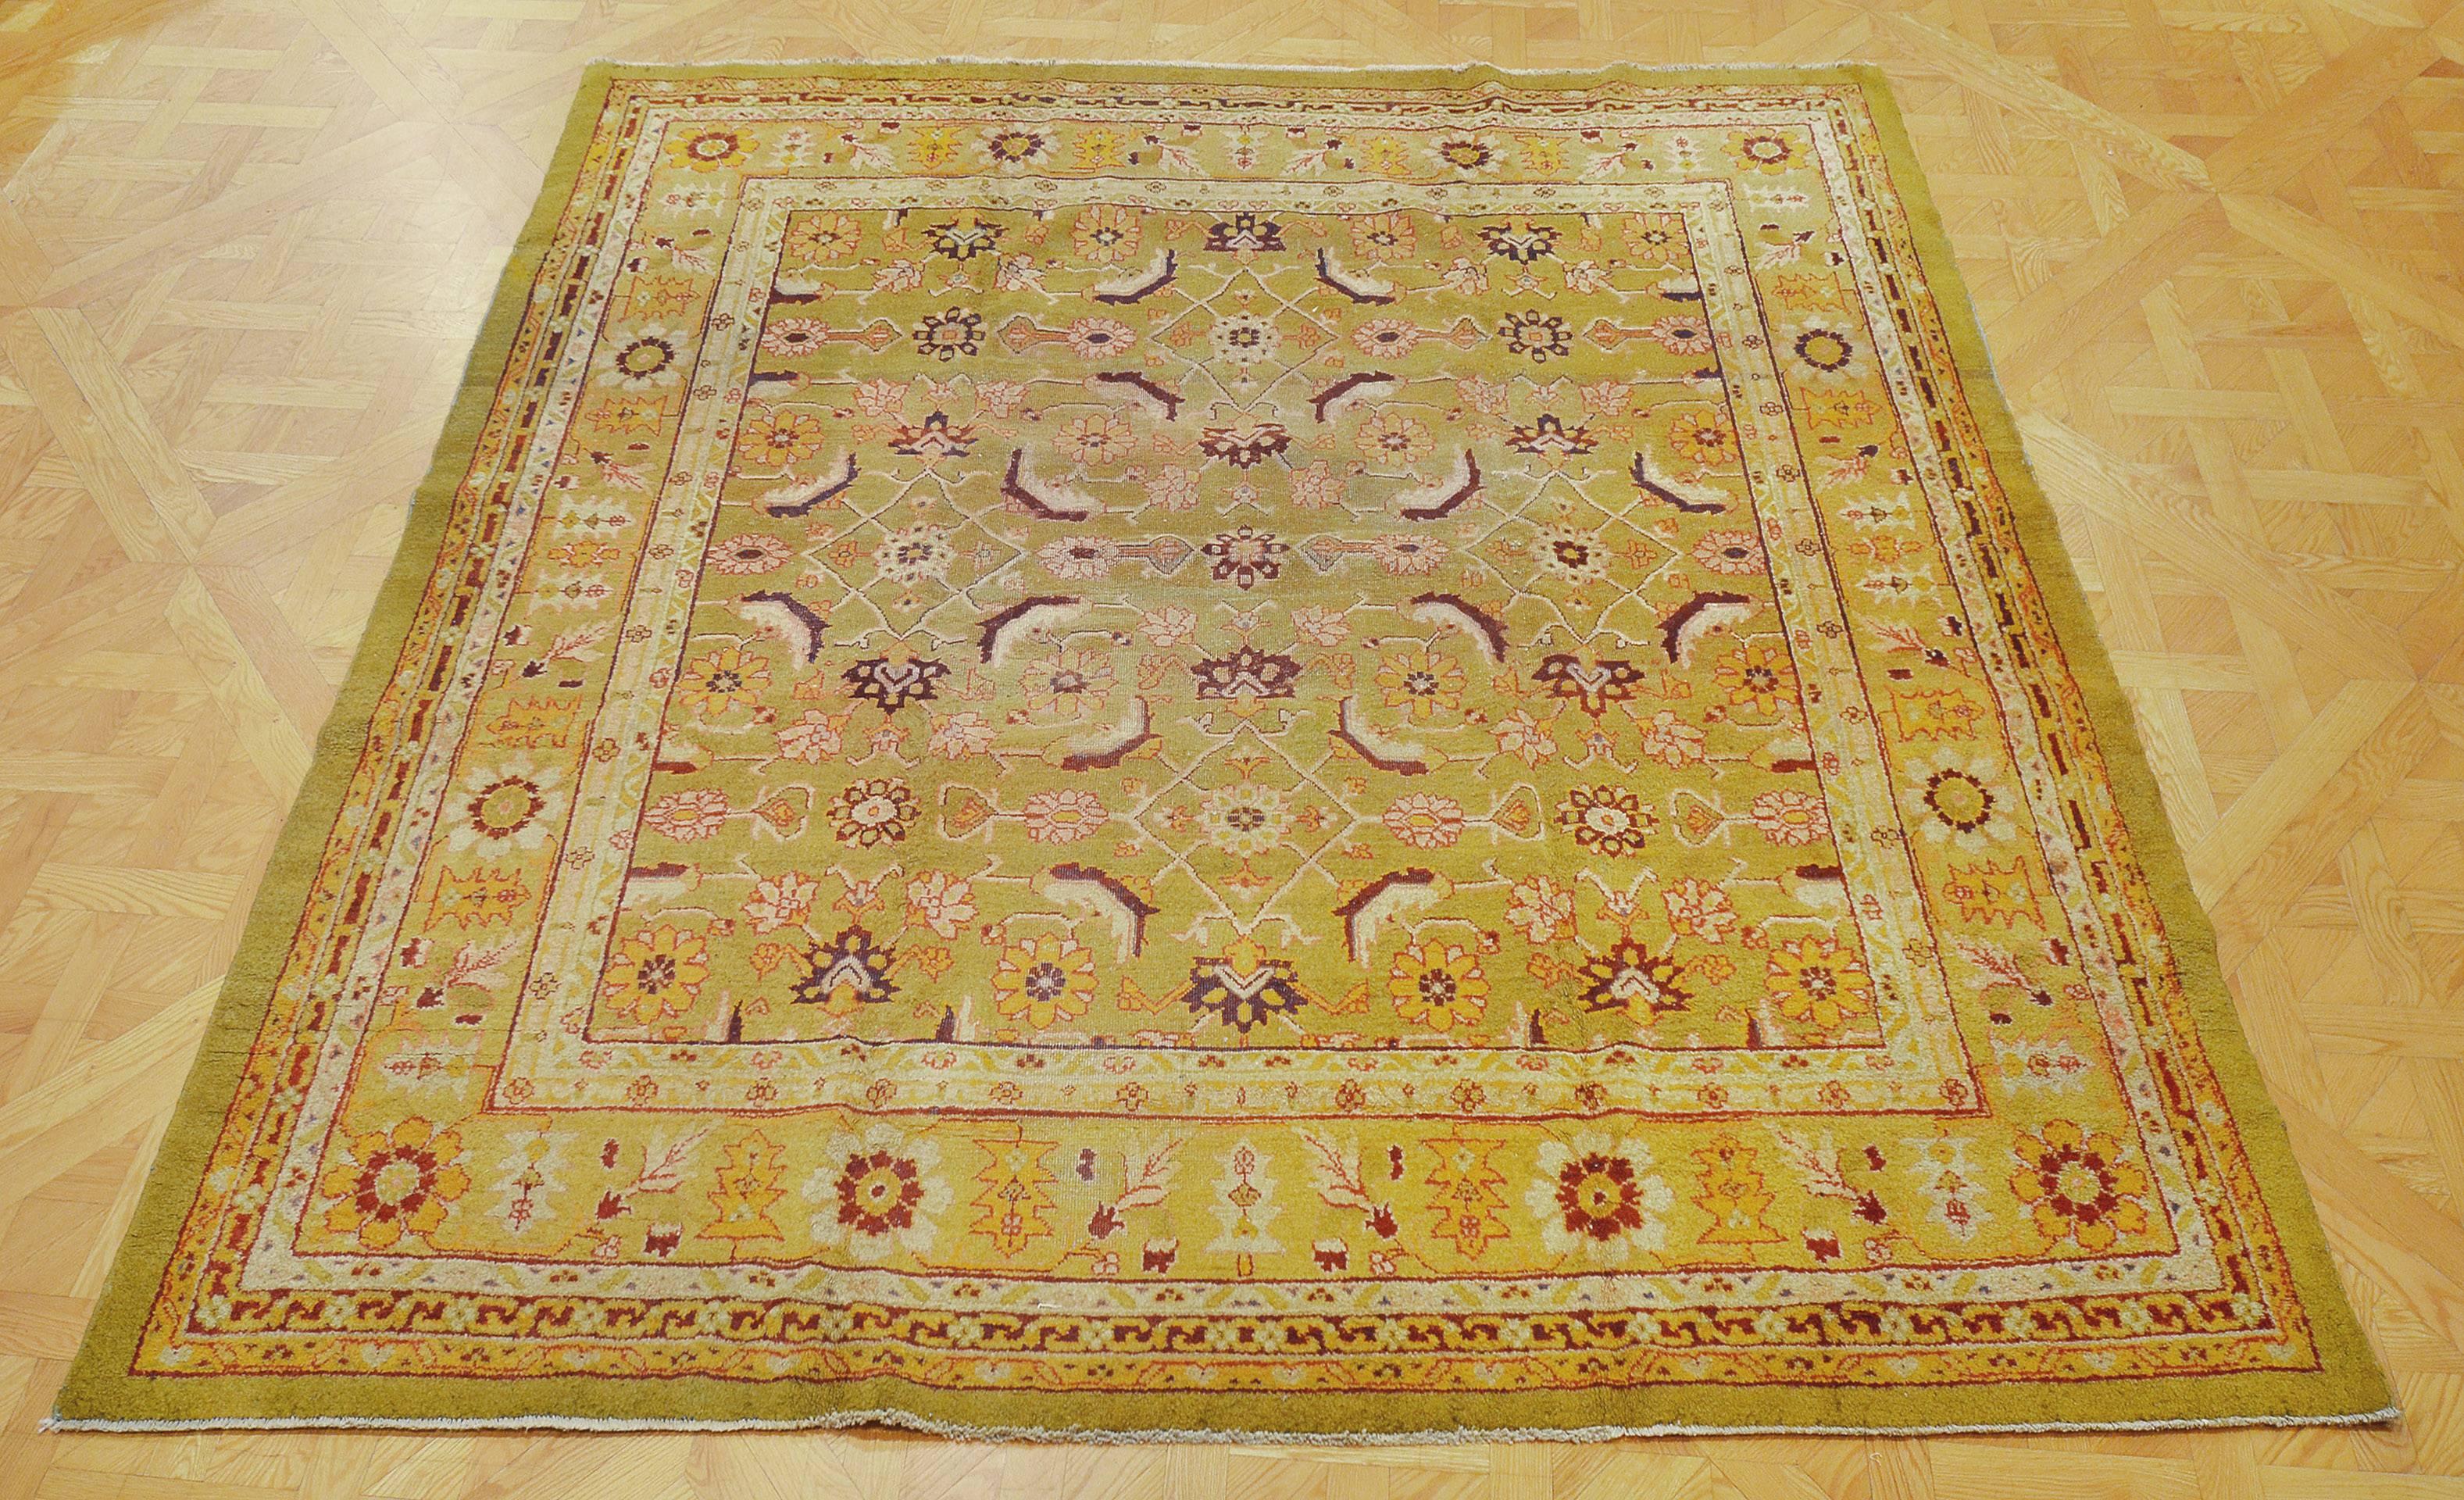 Dieser traditionelle, handgewebte indische Agra-Teppich hat ein weiches, chartreusefarbenes Feld mit einem abgewinkelten Herati-Muster in einer grünen Apfel-Blumenbordüre zwischen einer Fülle von tonalen Rankenstreifen und einem unifarbenen,